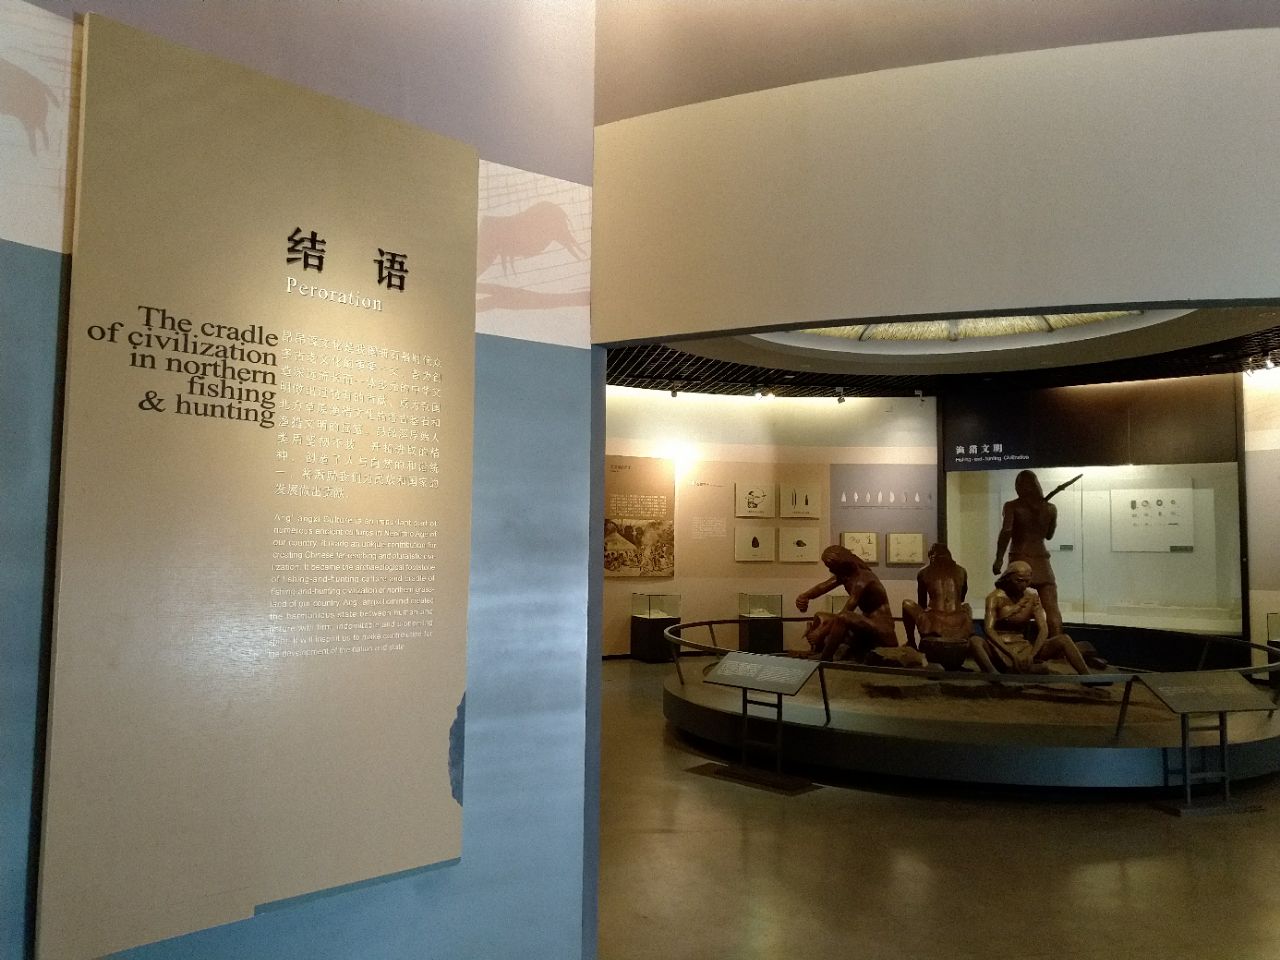 昂昂溪遗址博物馆位于黑龙江省齐齐哈尔市昂昂溪区,是黑龙江省首座